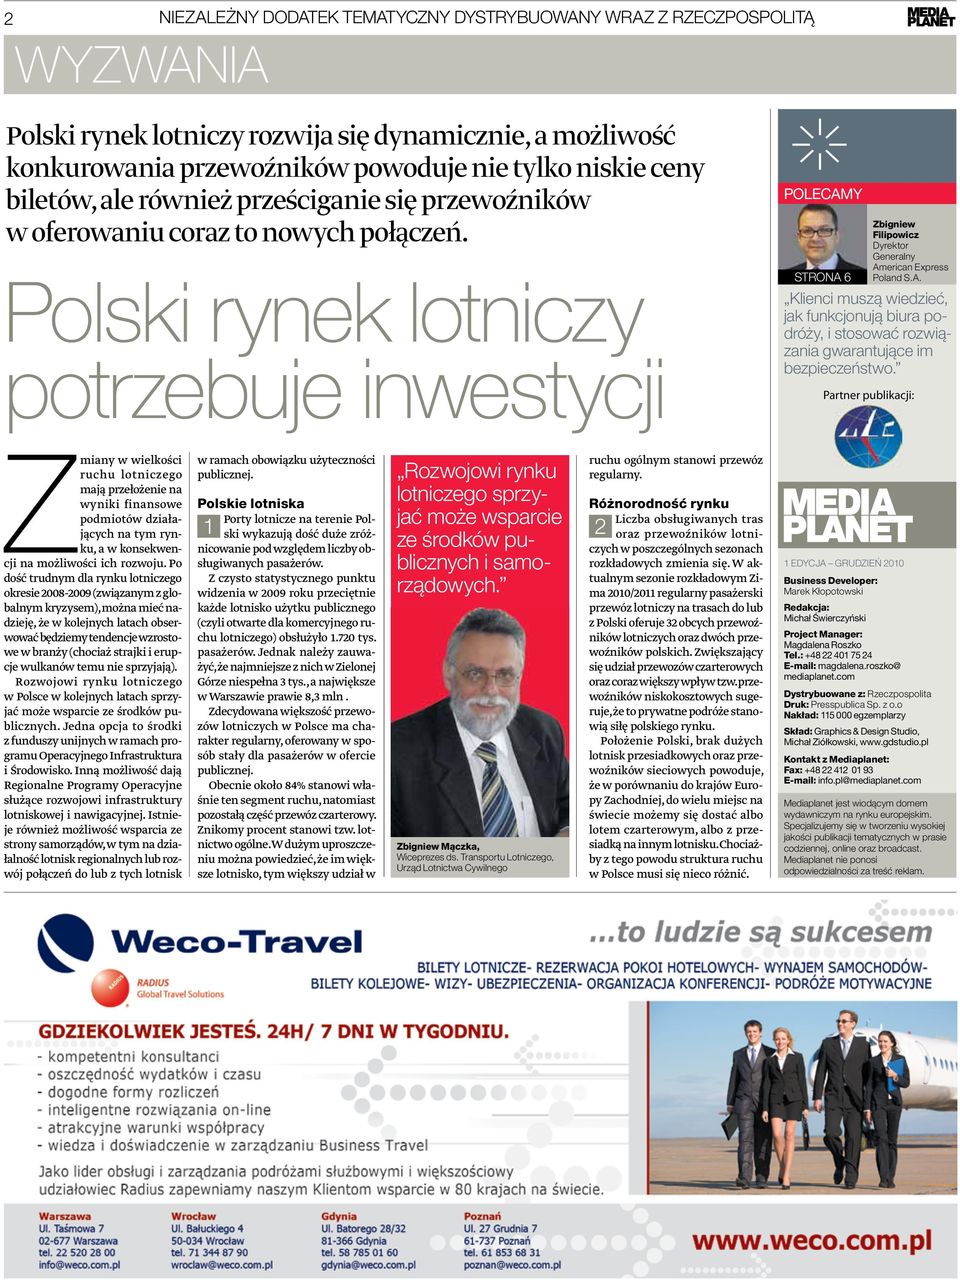 Polski rynek lotniczy potrzebuje inwestycji POLECAMY STRONA 6 Zbigniew Filipowicz Dyrektor Generalny American Express Poland S.A. Klienci muszą wiedzieć, jak funkcjonują biura podróży, i stosować rozwiązania gwarantujące im bezpieczeństwo.